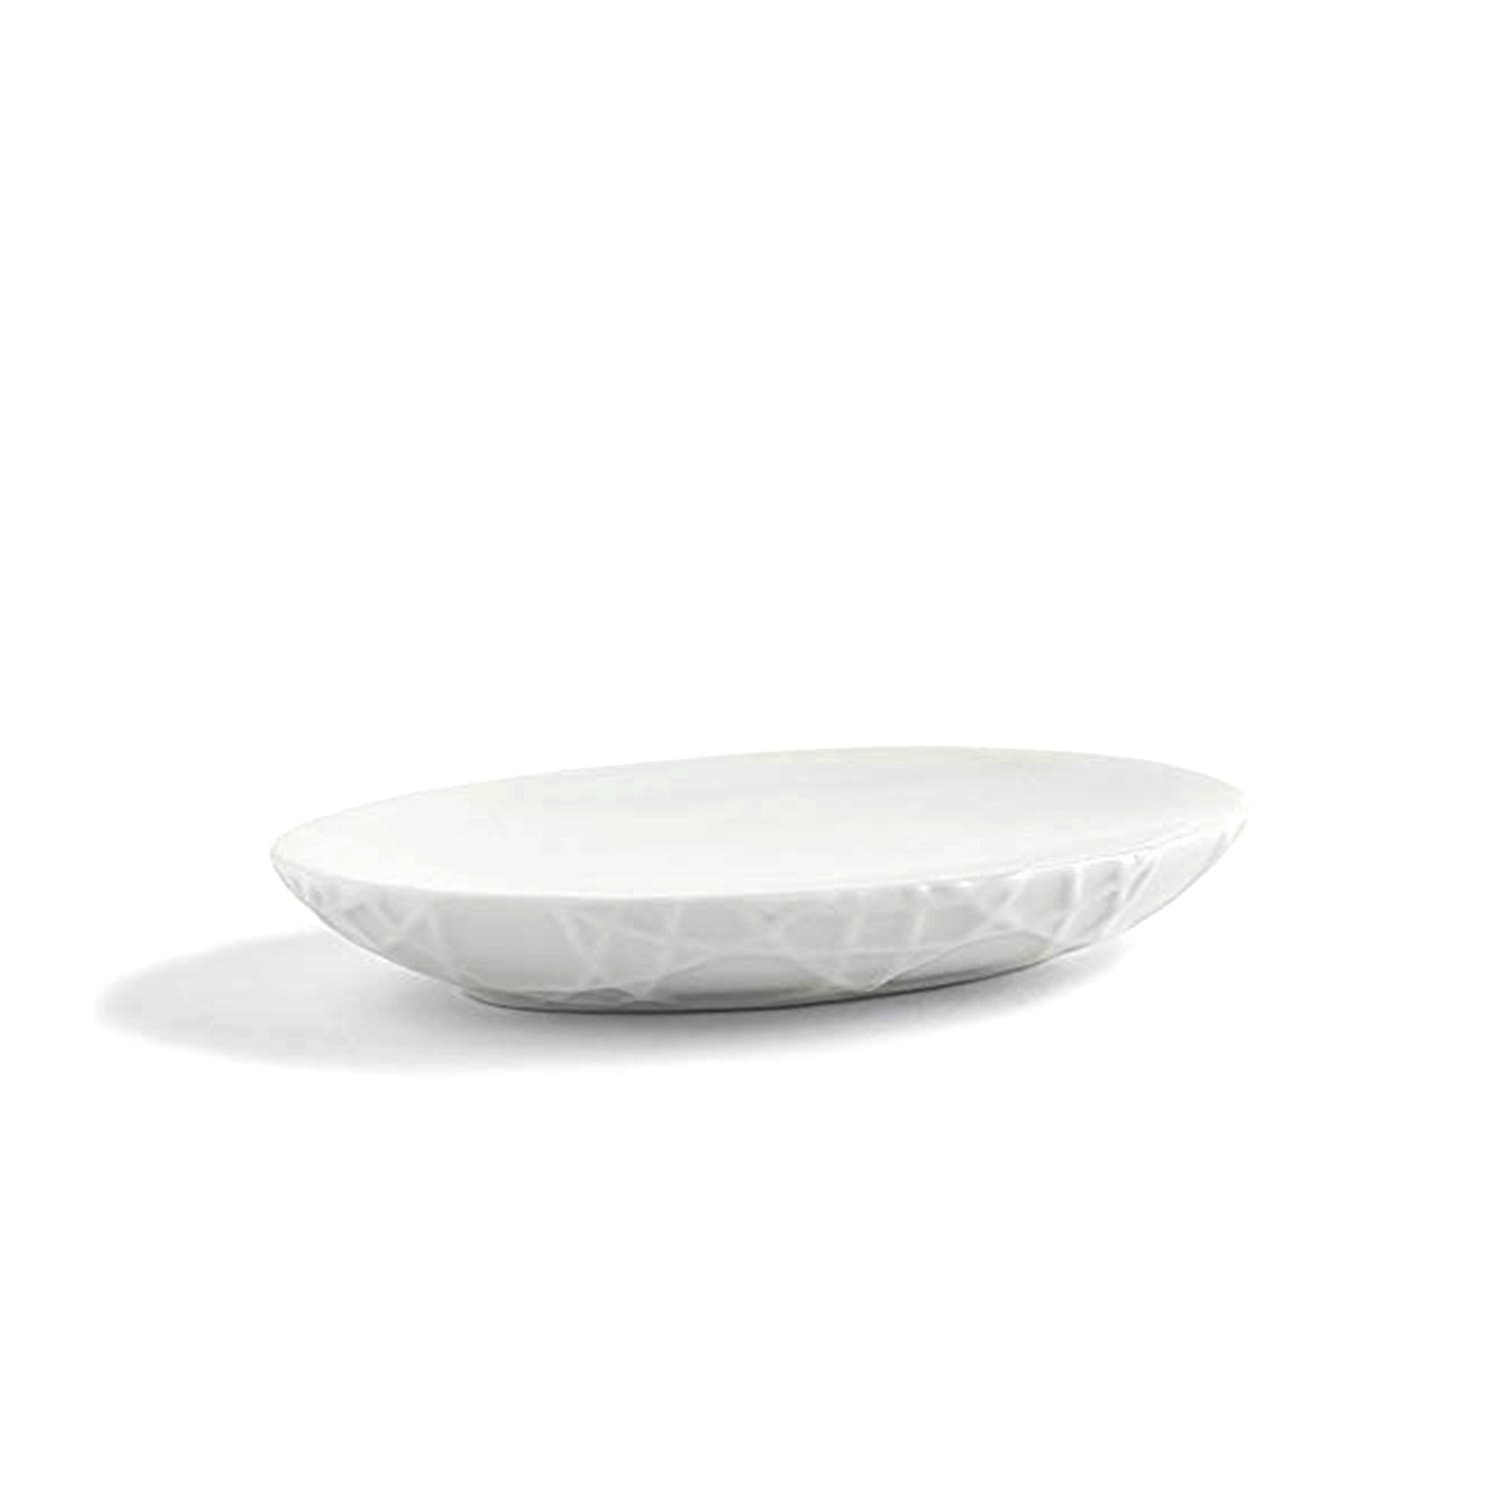 Kassatex Rattan Embossed Porcelain Soap Dish - White - ARN-SD - Jashanmal Home